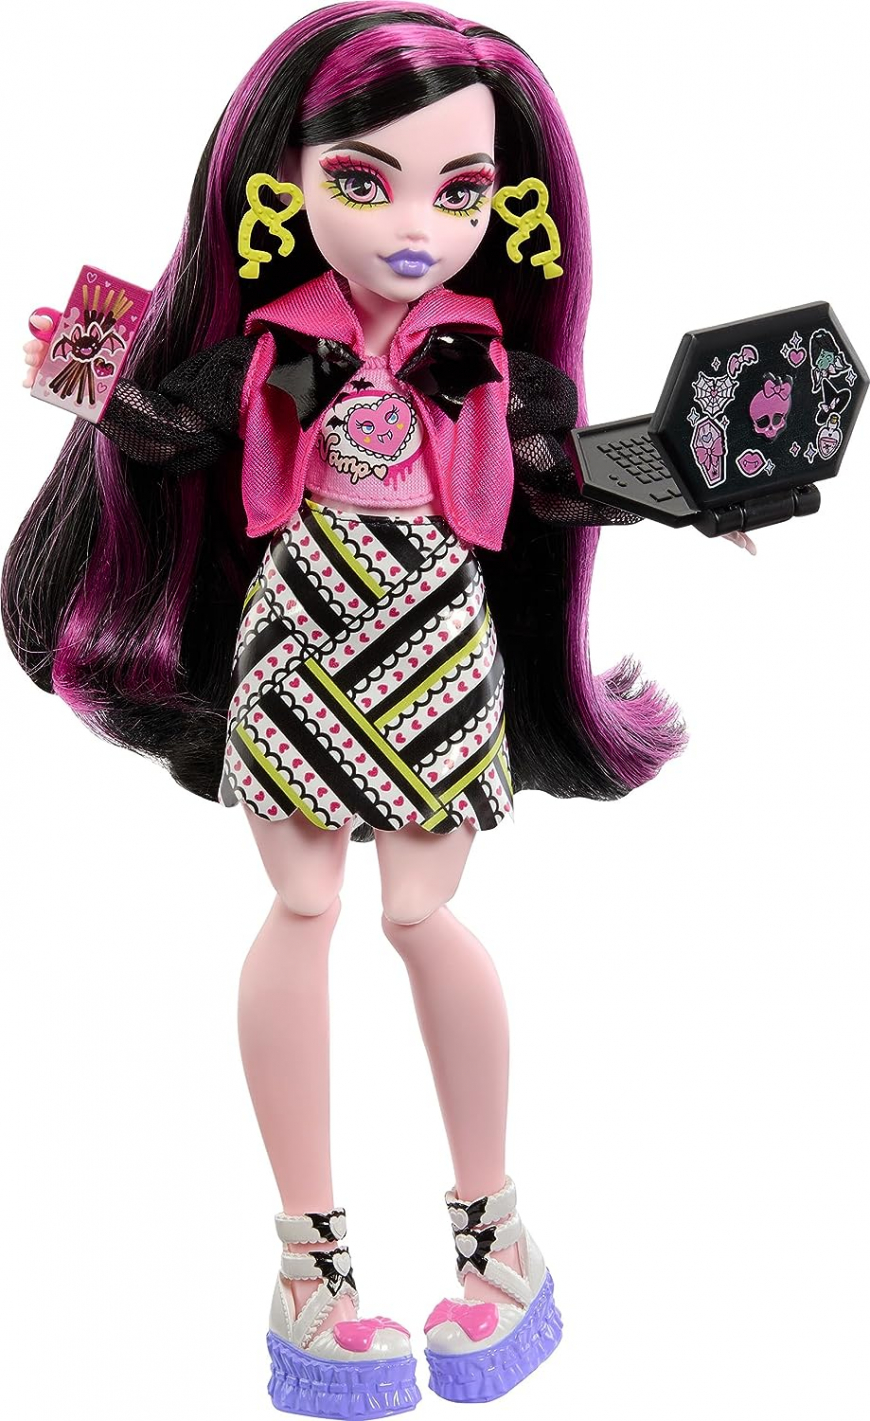 Monster High Skulltimates Secrets Neon Frights series 3 Draculaura doll